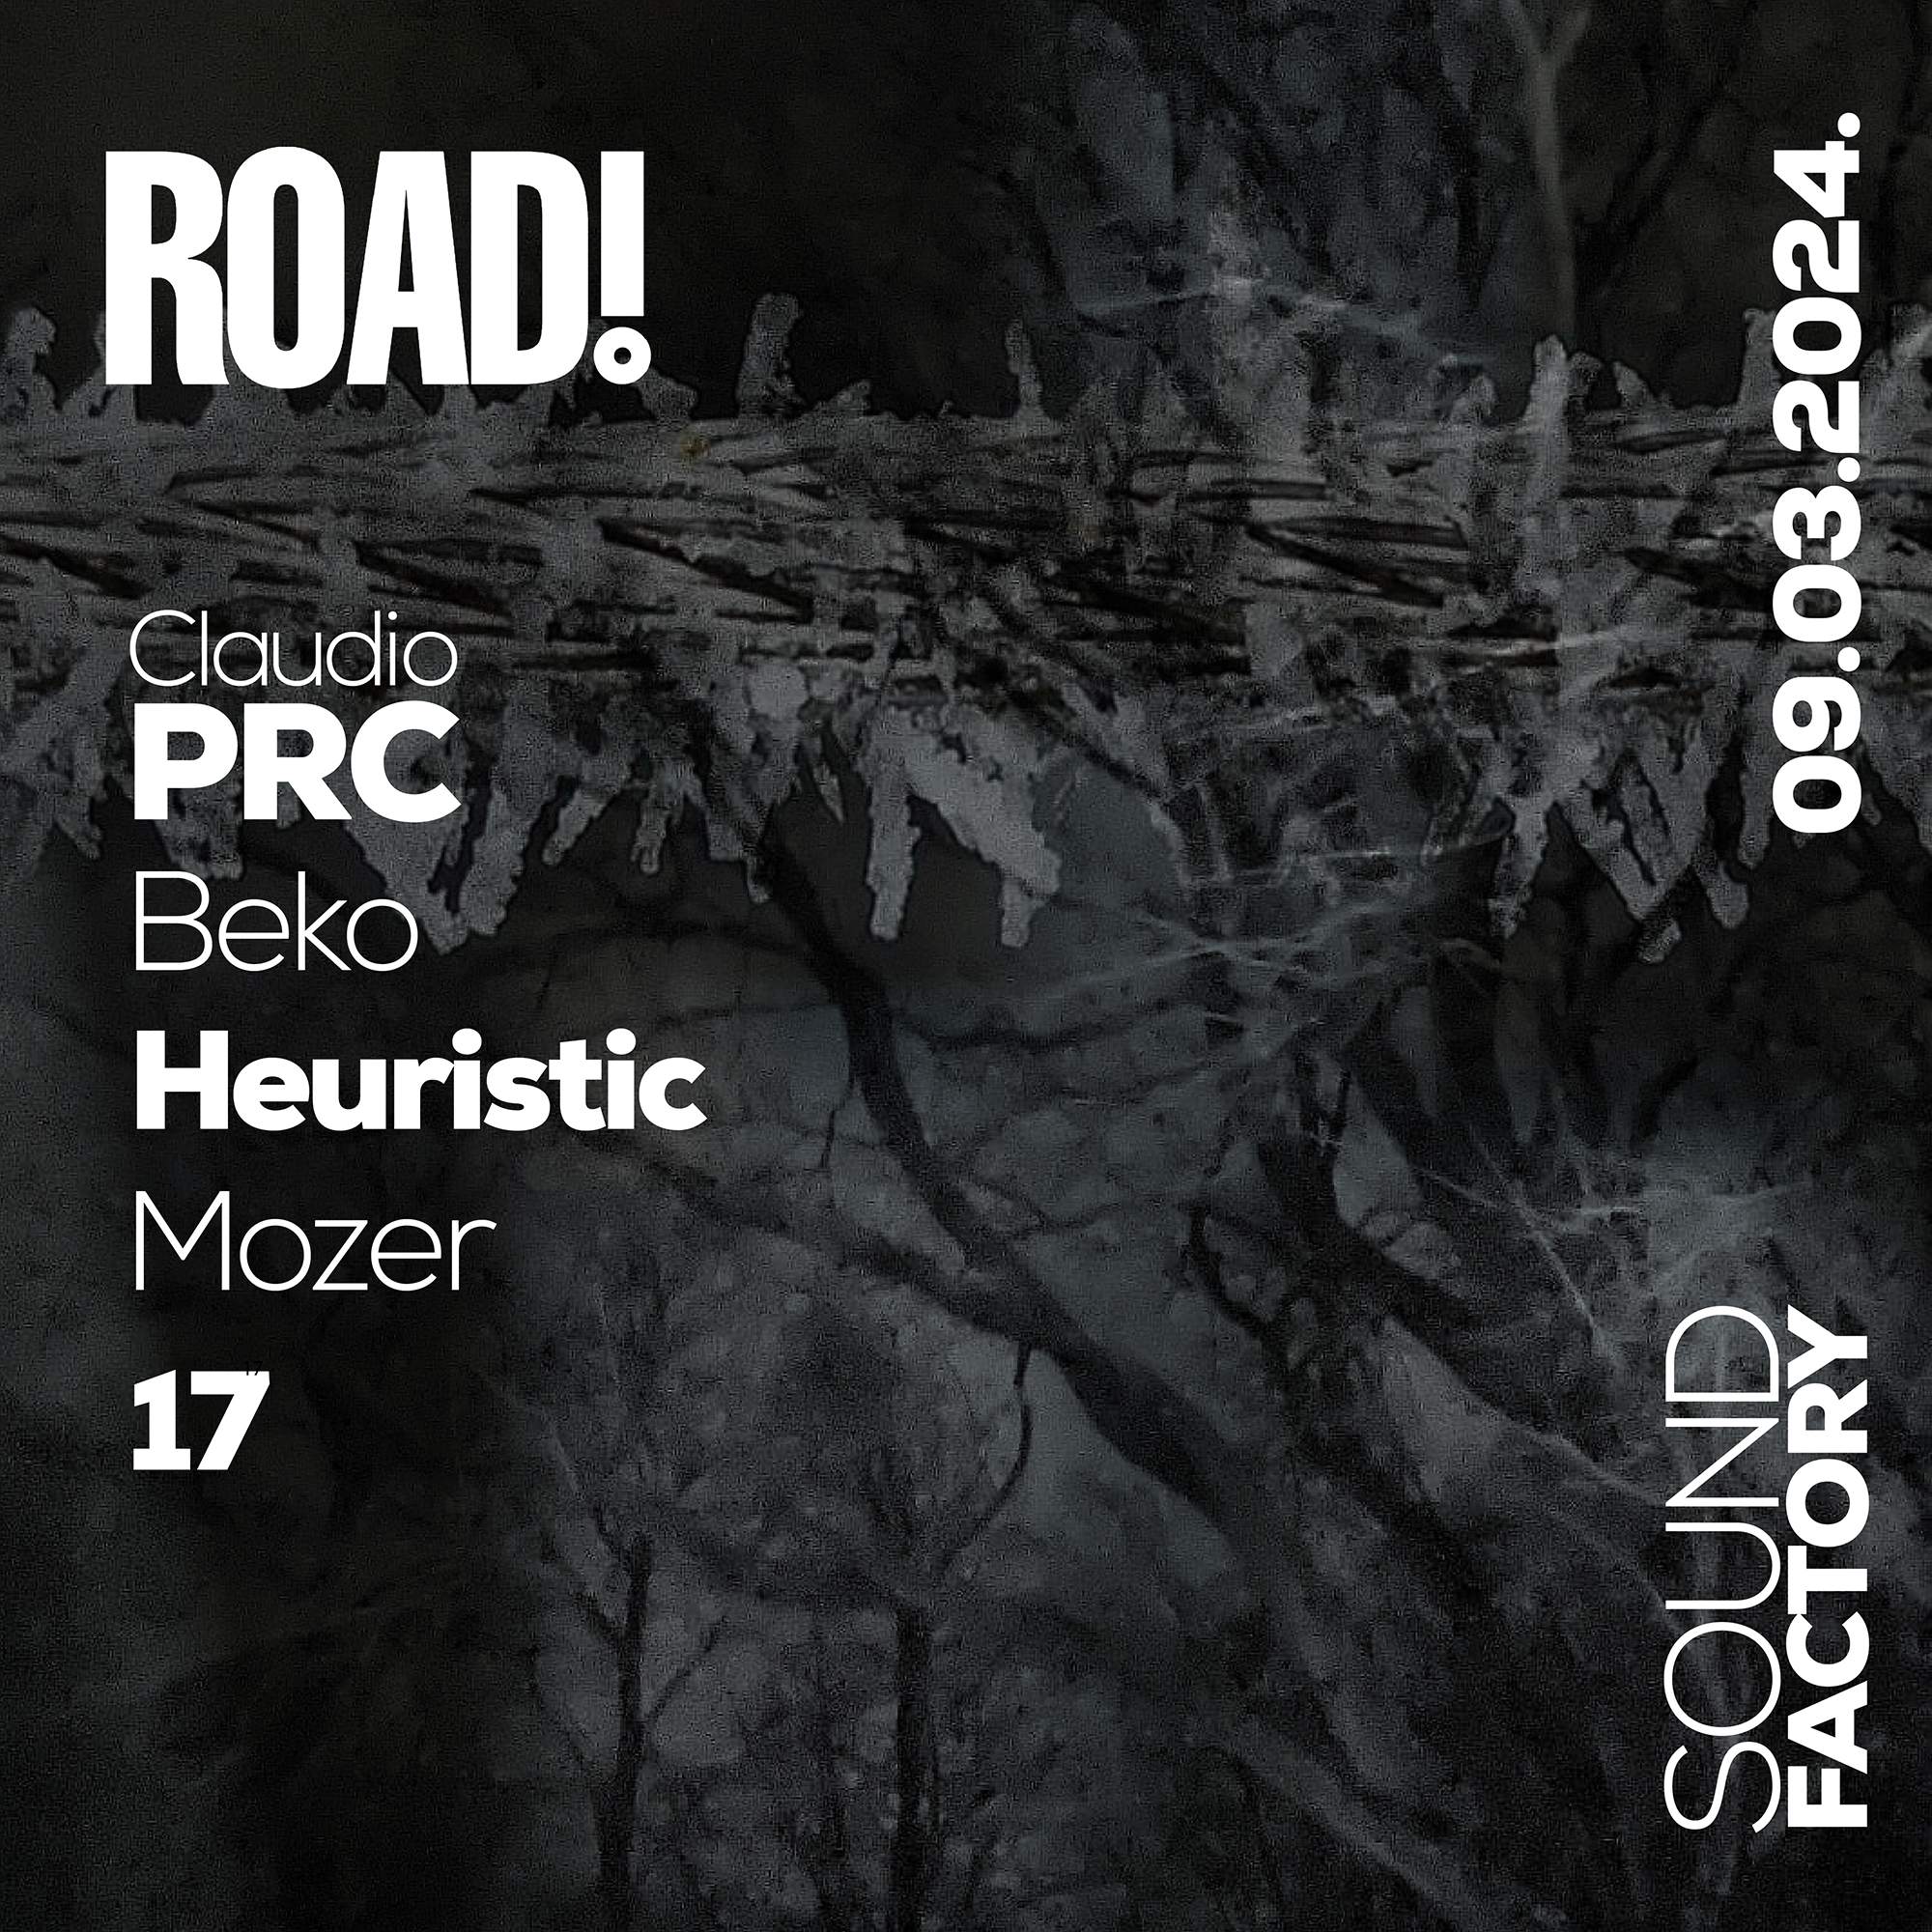 Road! #007 with Claudio PRC - Página frontal